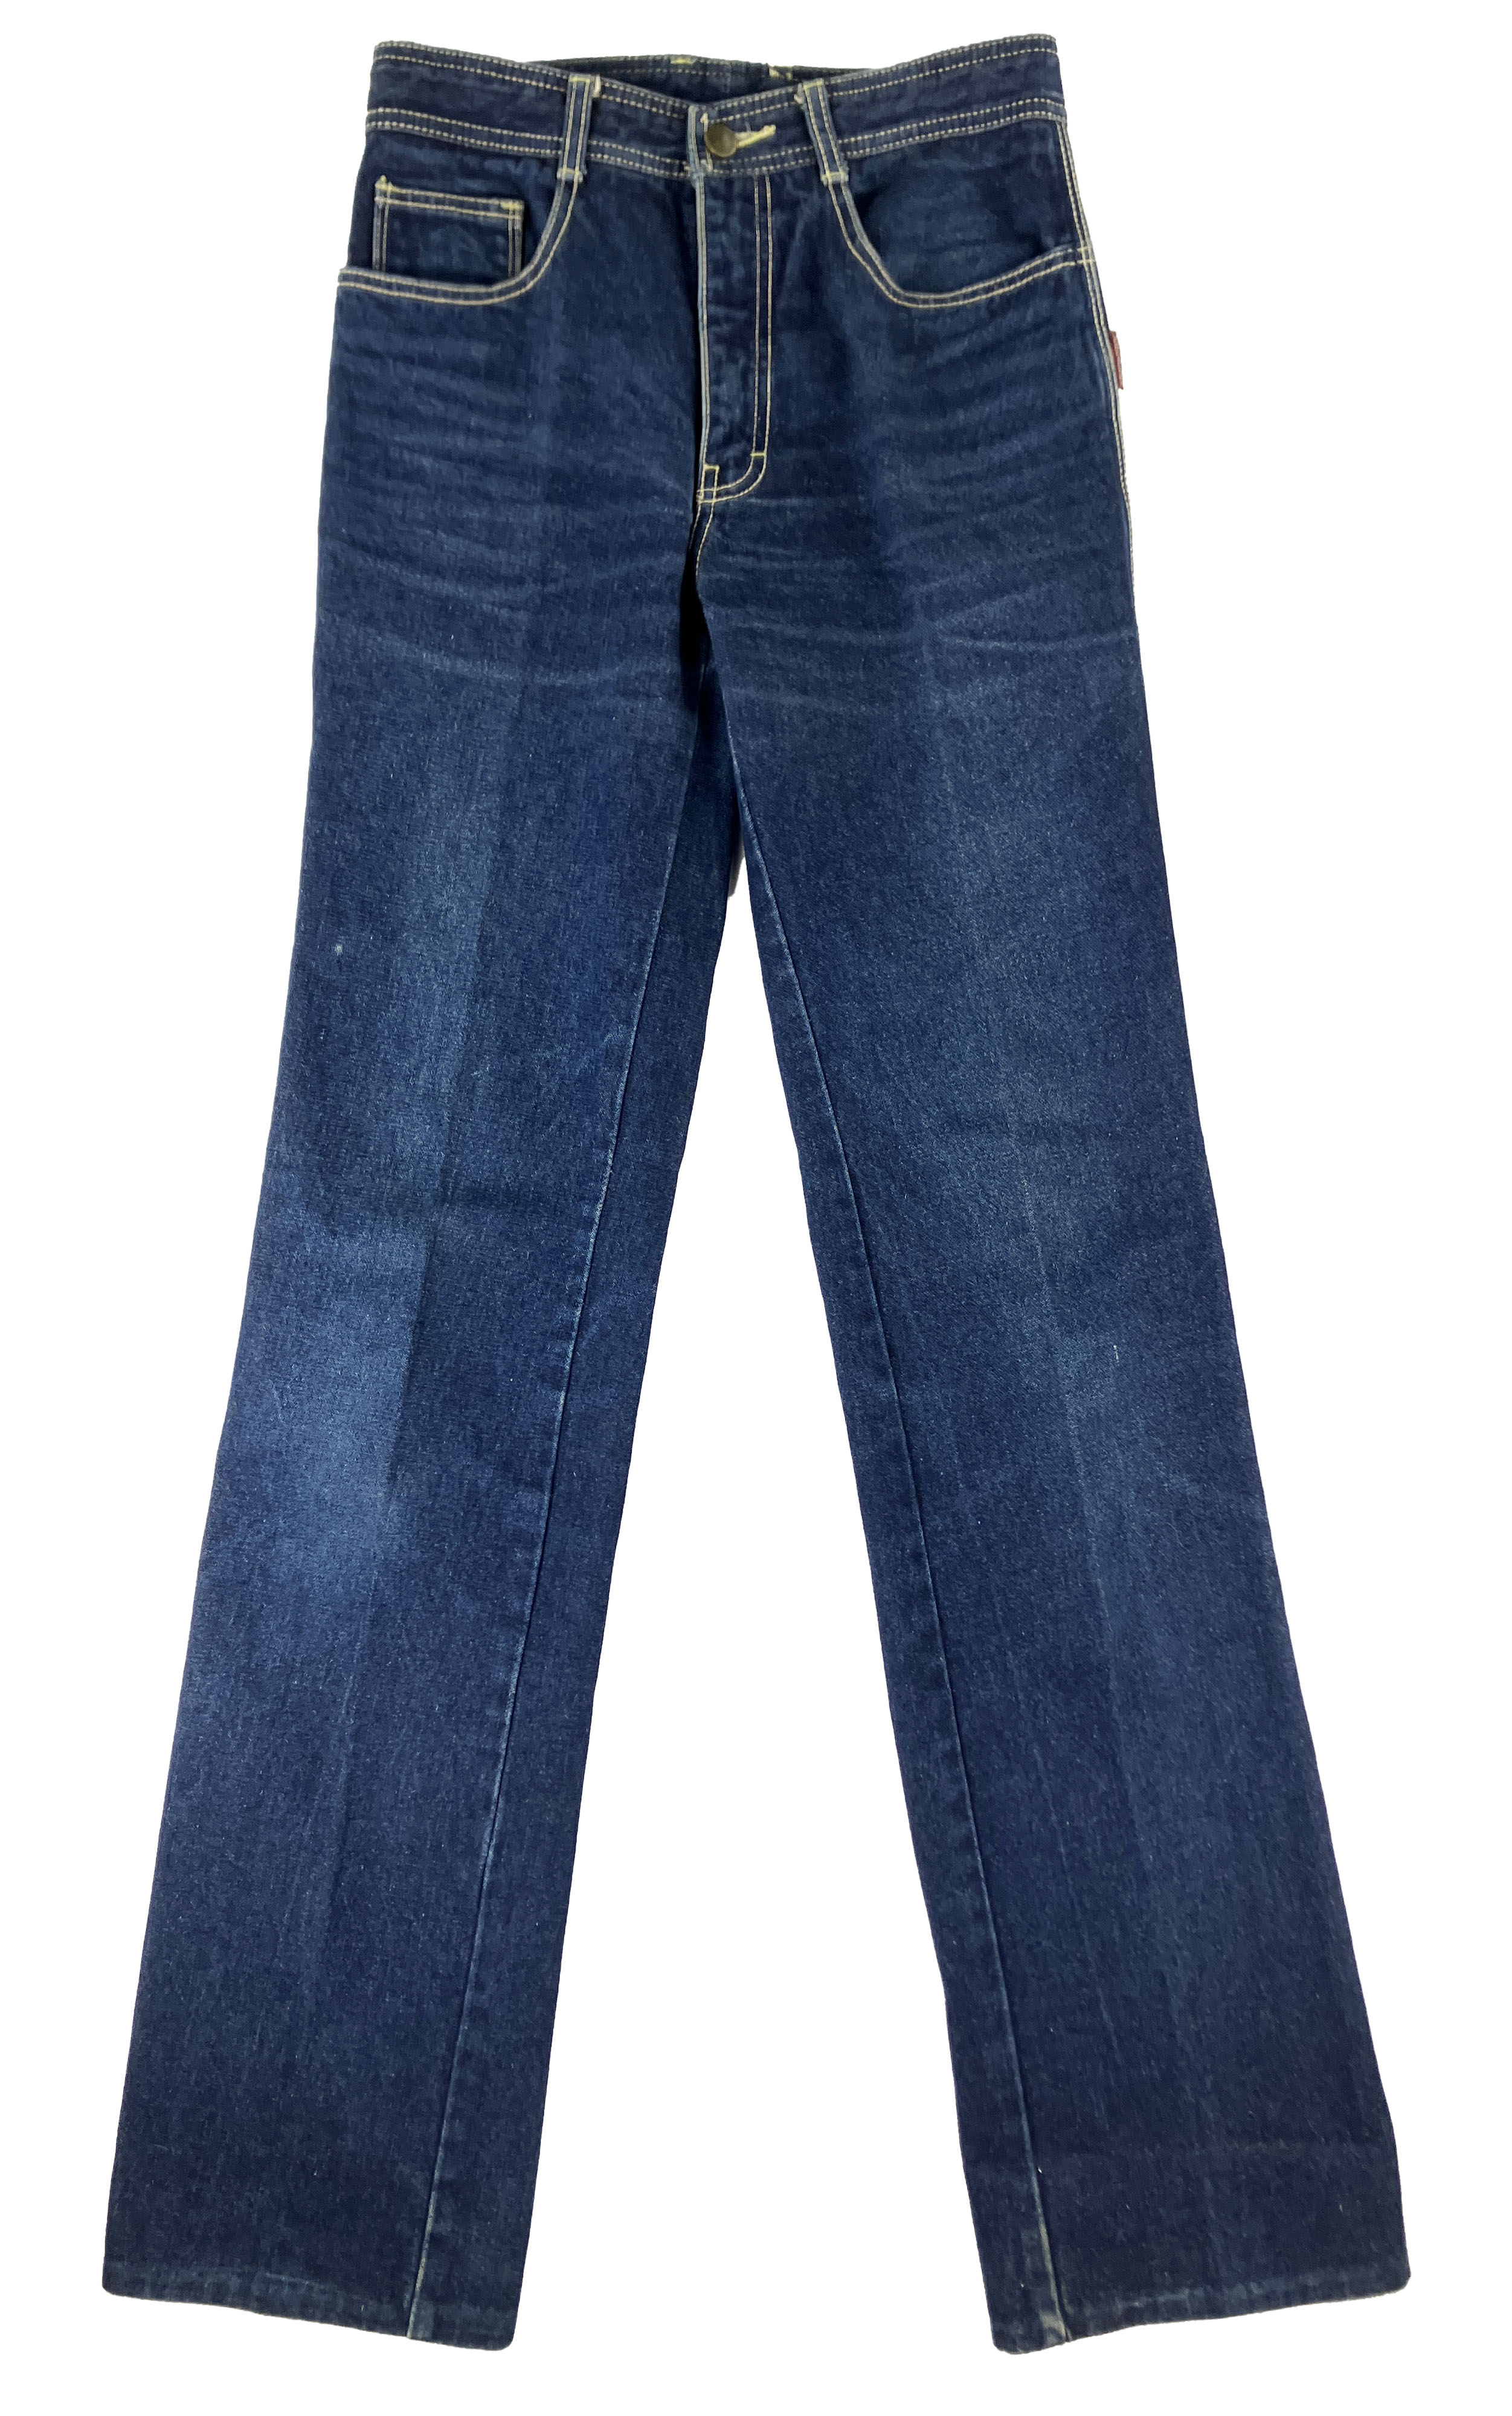 Vintage Jordache Jeans – 8th & Main